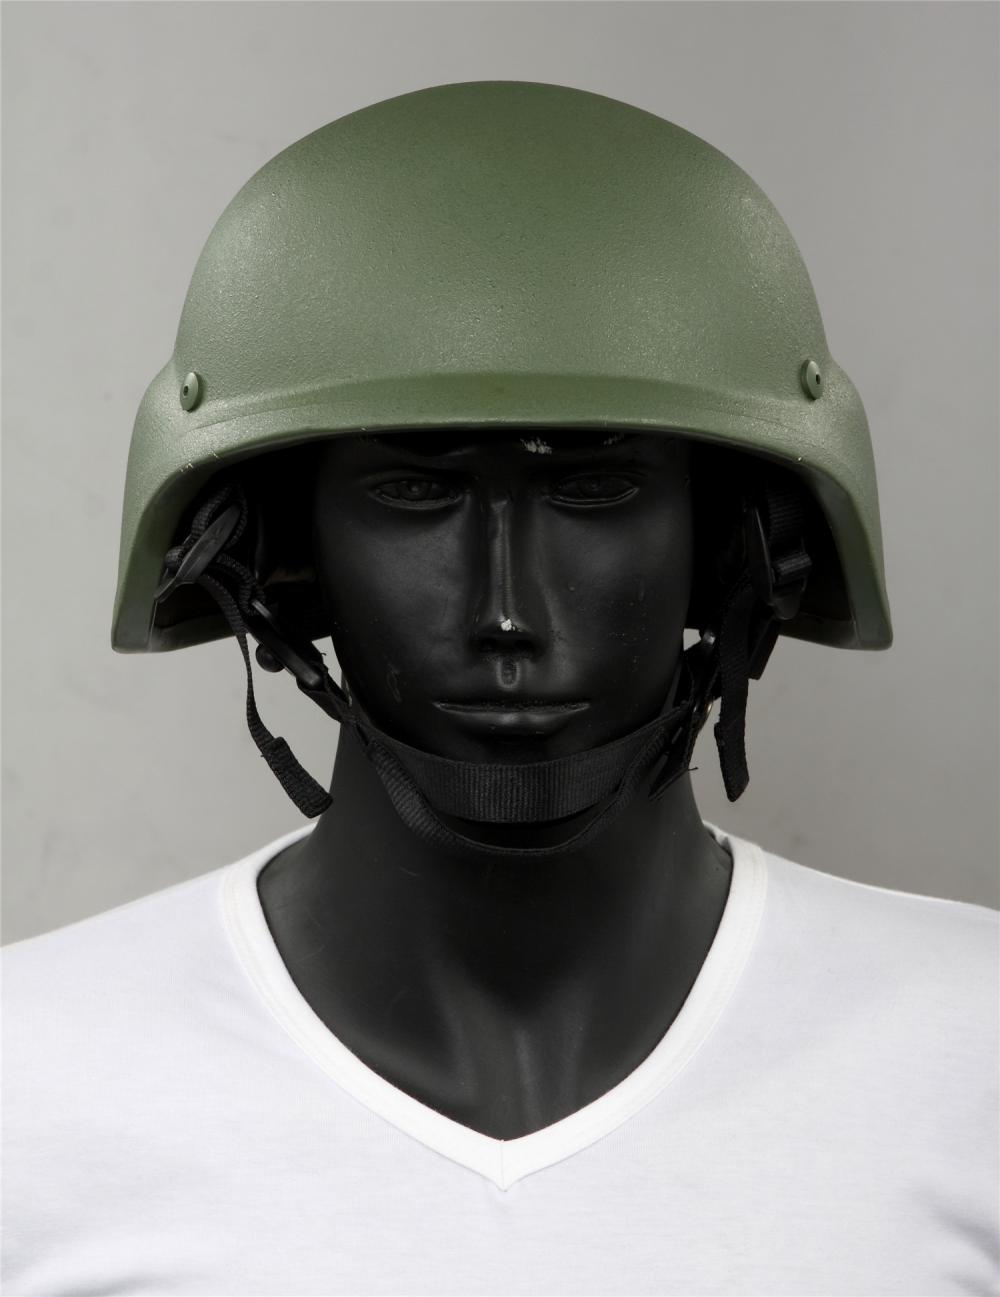 アメリカ Pasgt 防弾ヘルメット カバーをないです。